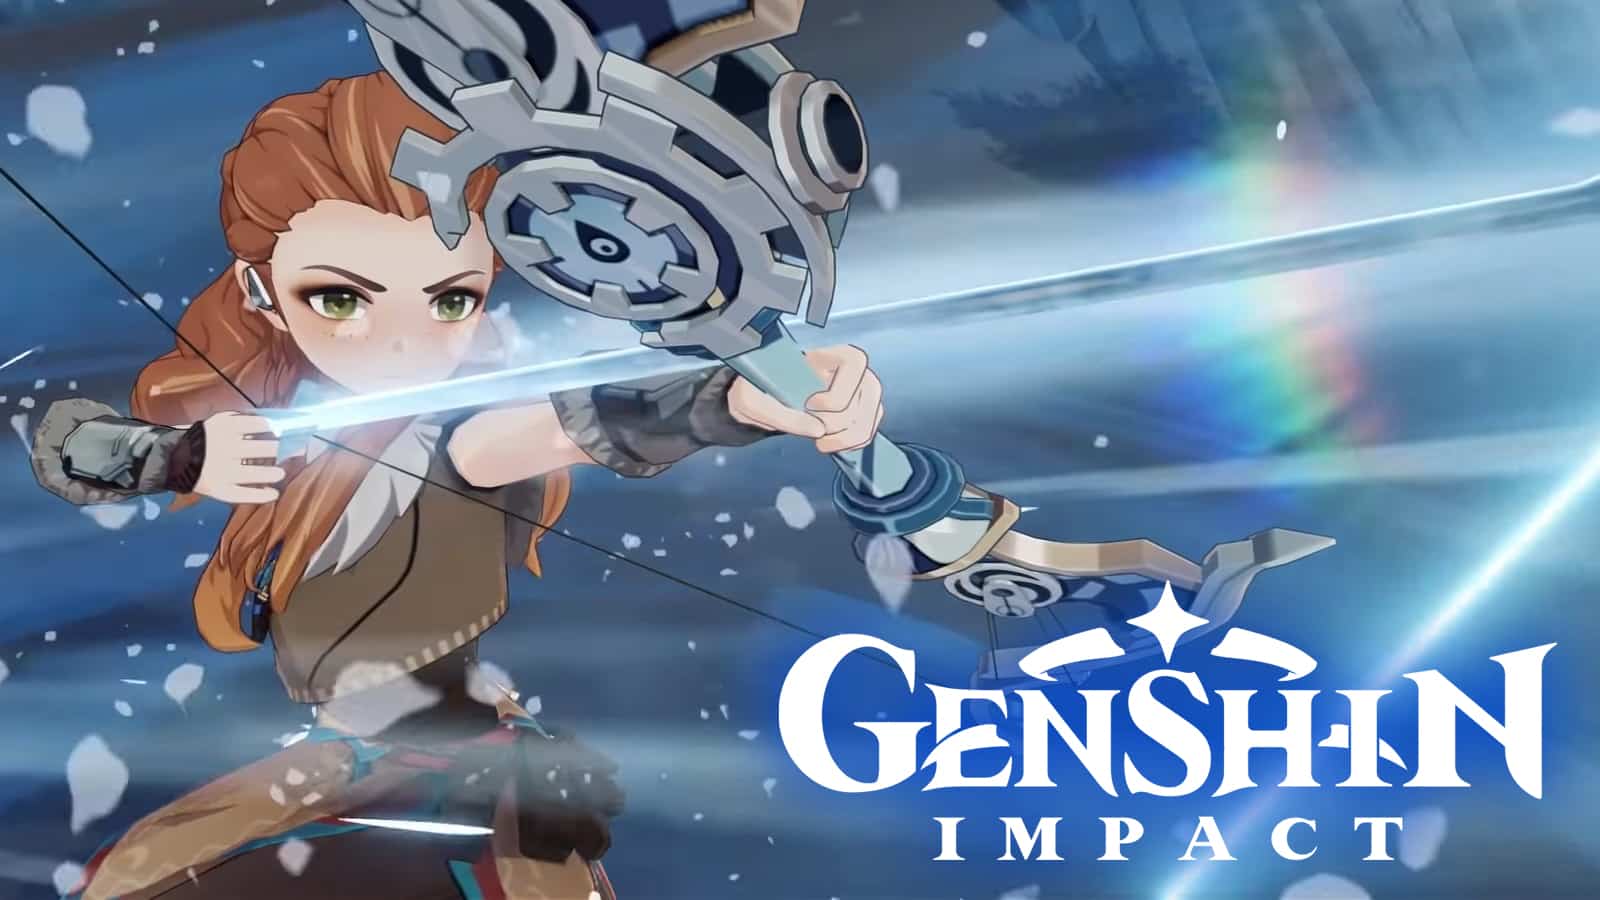 Genshin Impact recebe patch 2.1 com novos personagens de Inazuma e